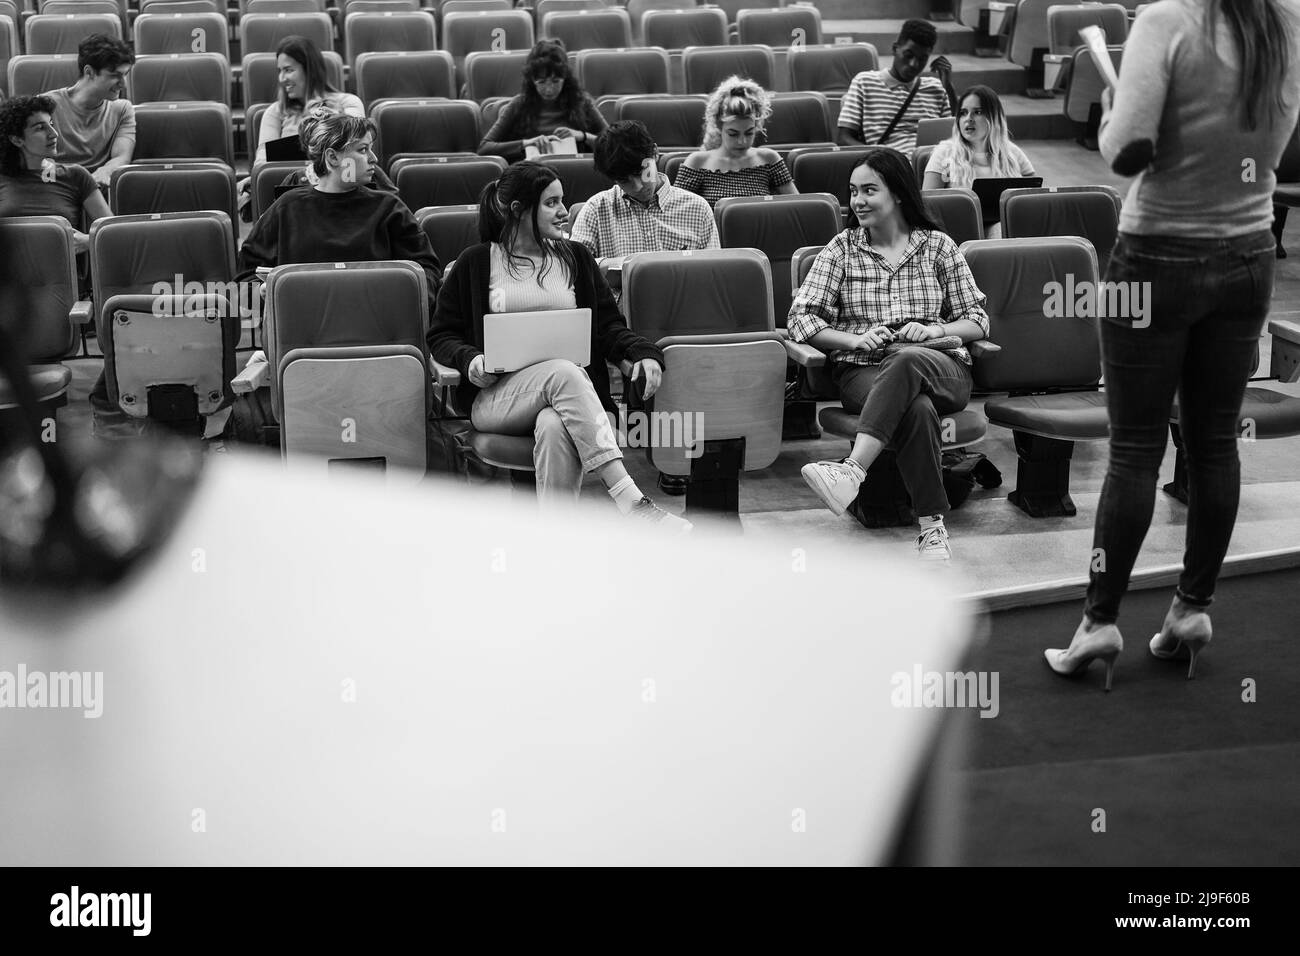 Junge Studenten hören Konferenzseminar im Auditorium Universität - Fokus auf Front Mädchen Gesichter - Schwarz-Weiß-Schnitt Stockfoto